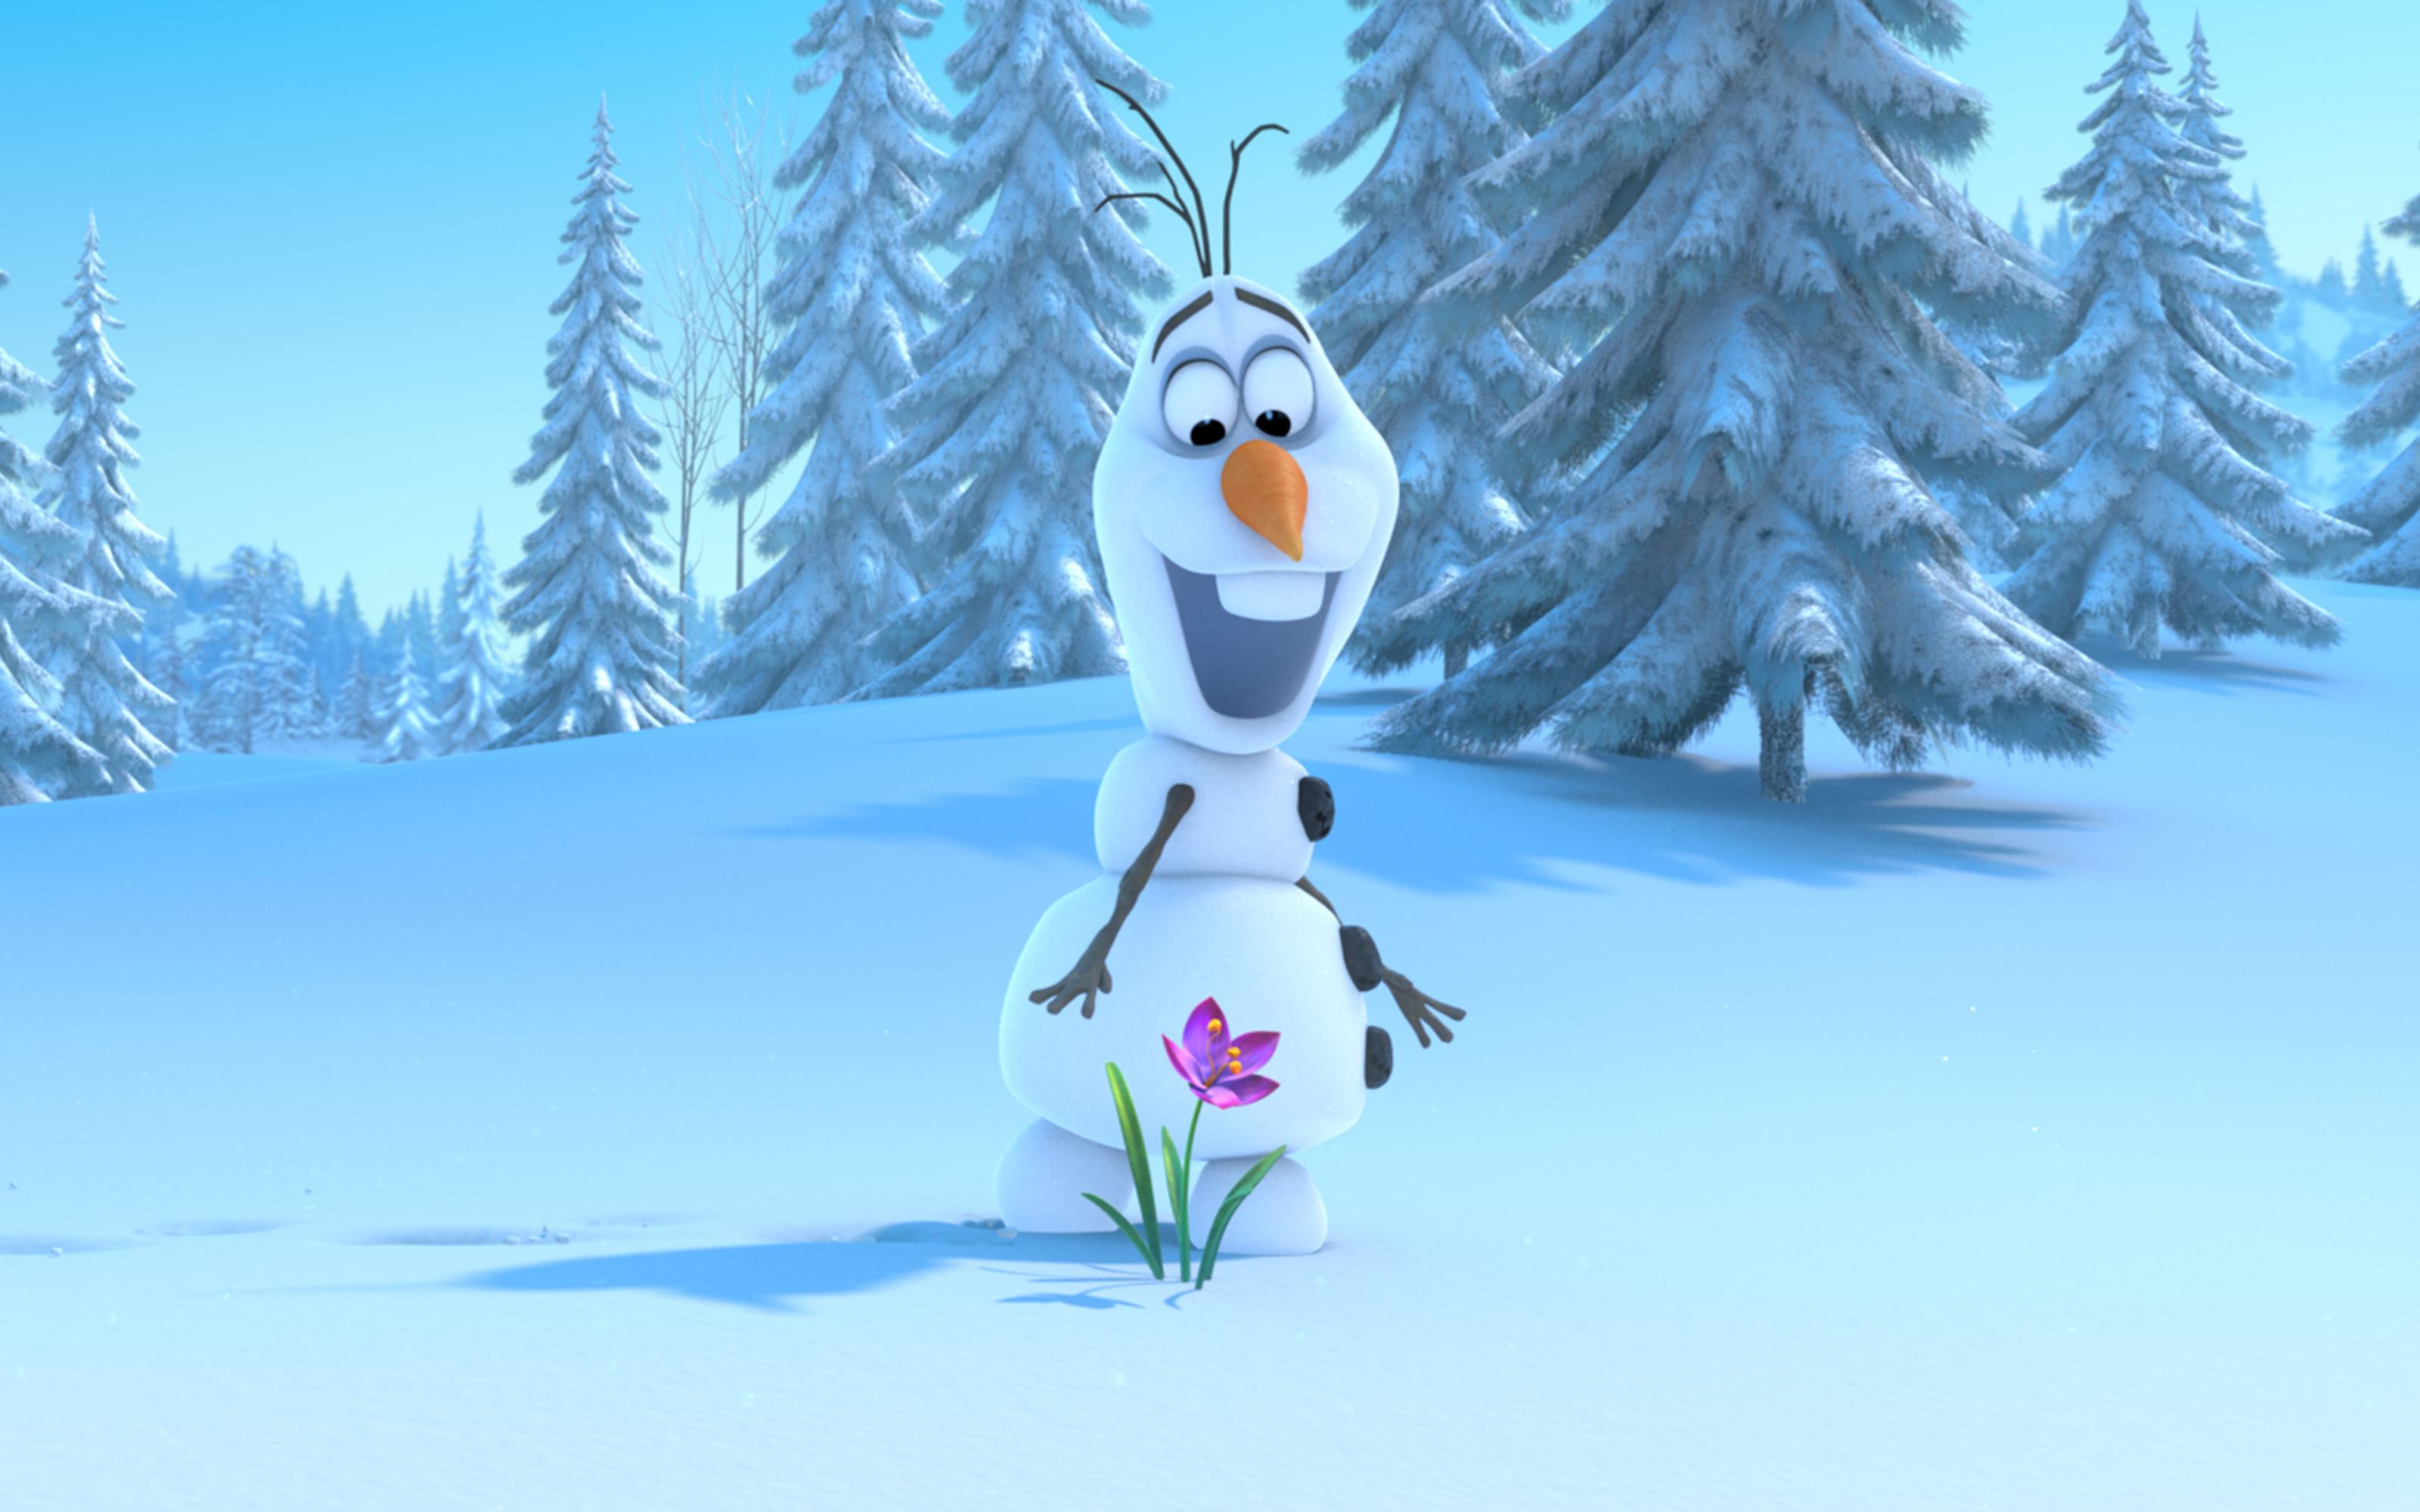 Frozen Olaf Wallpaper